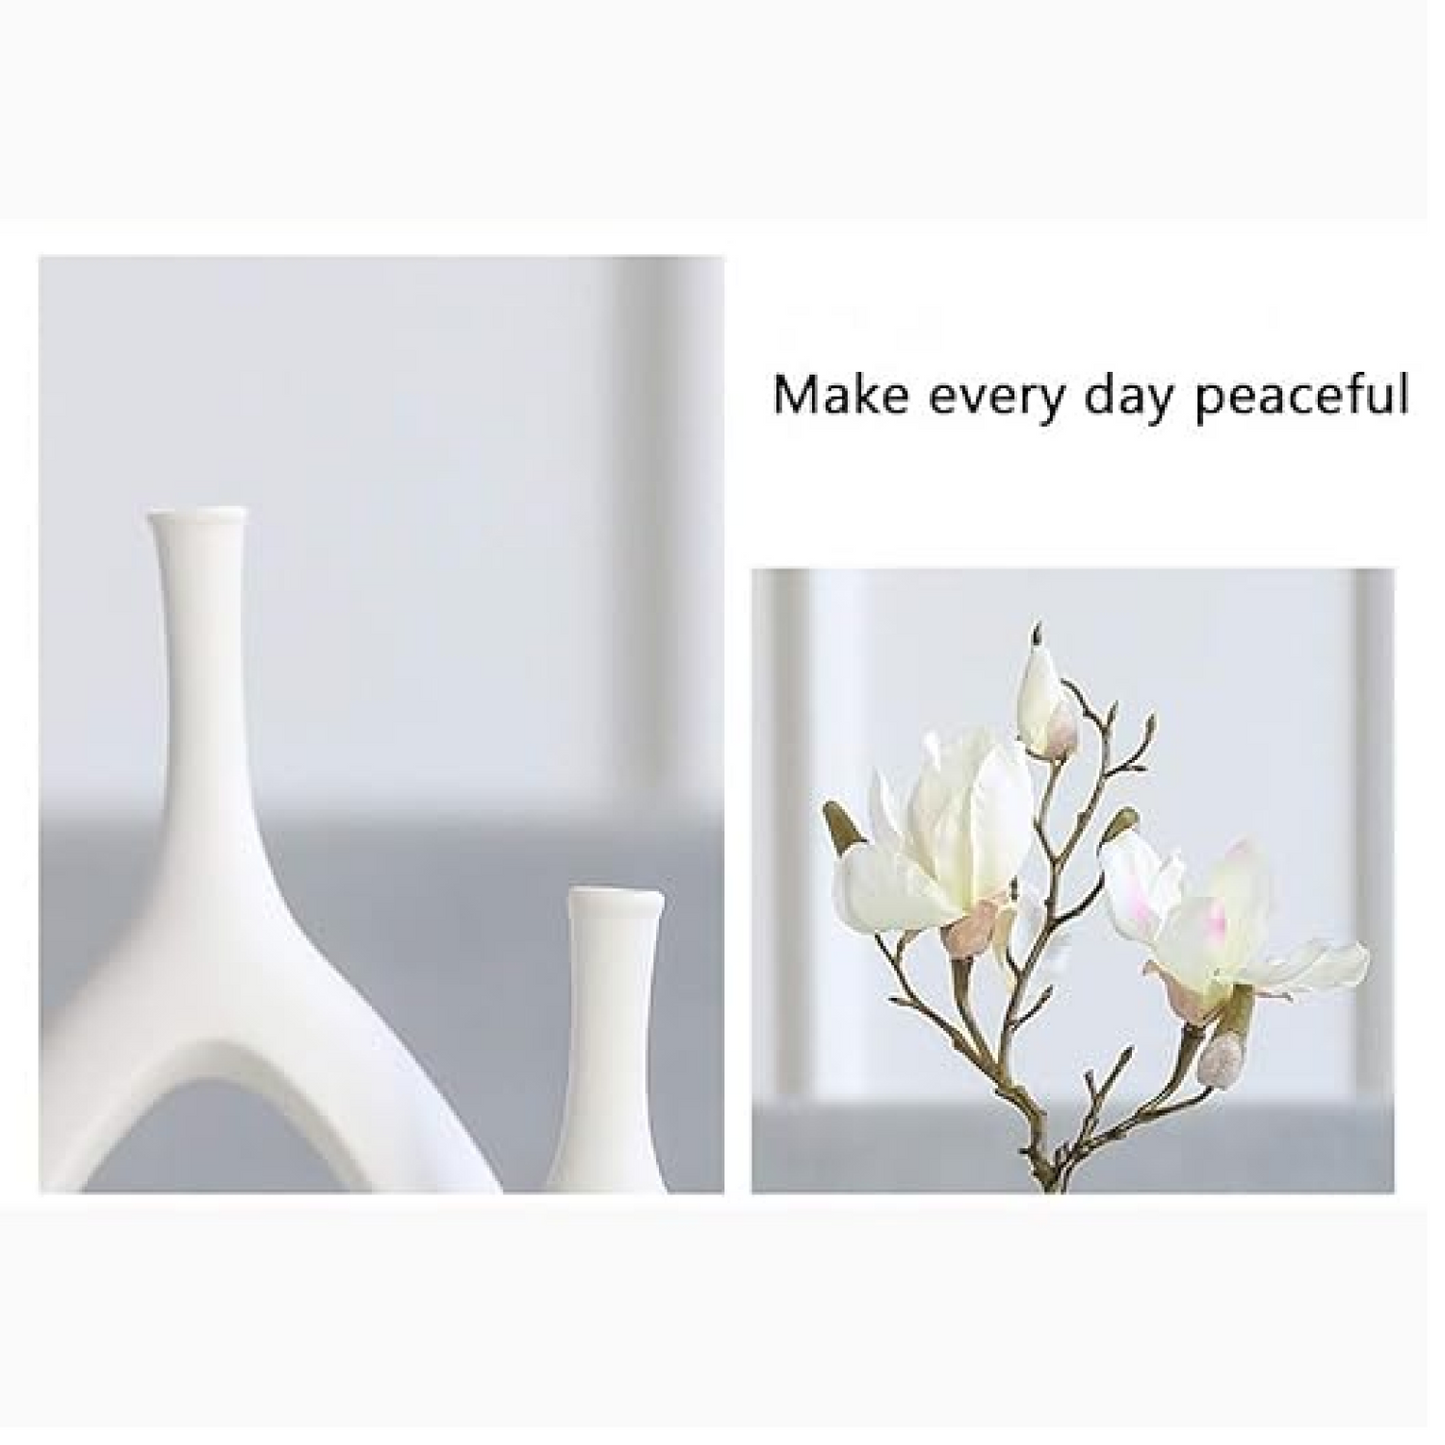 Hollow Ceramic Decorative Vase Set of 2